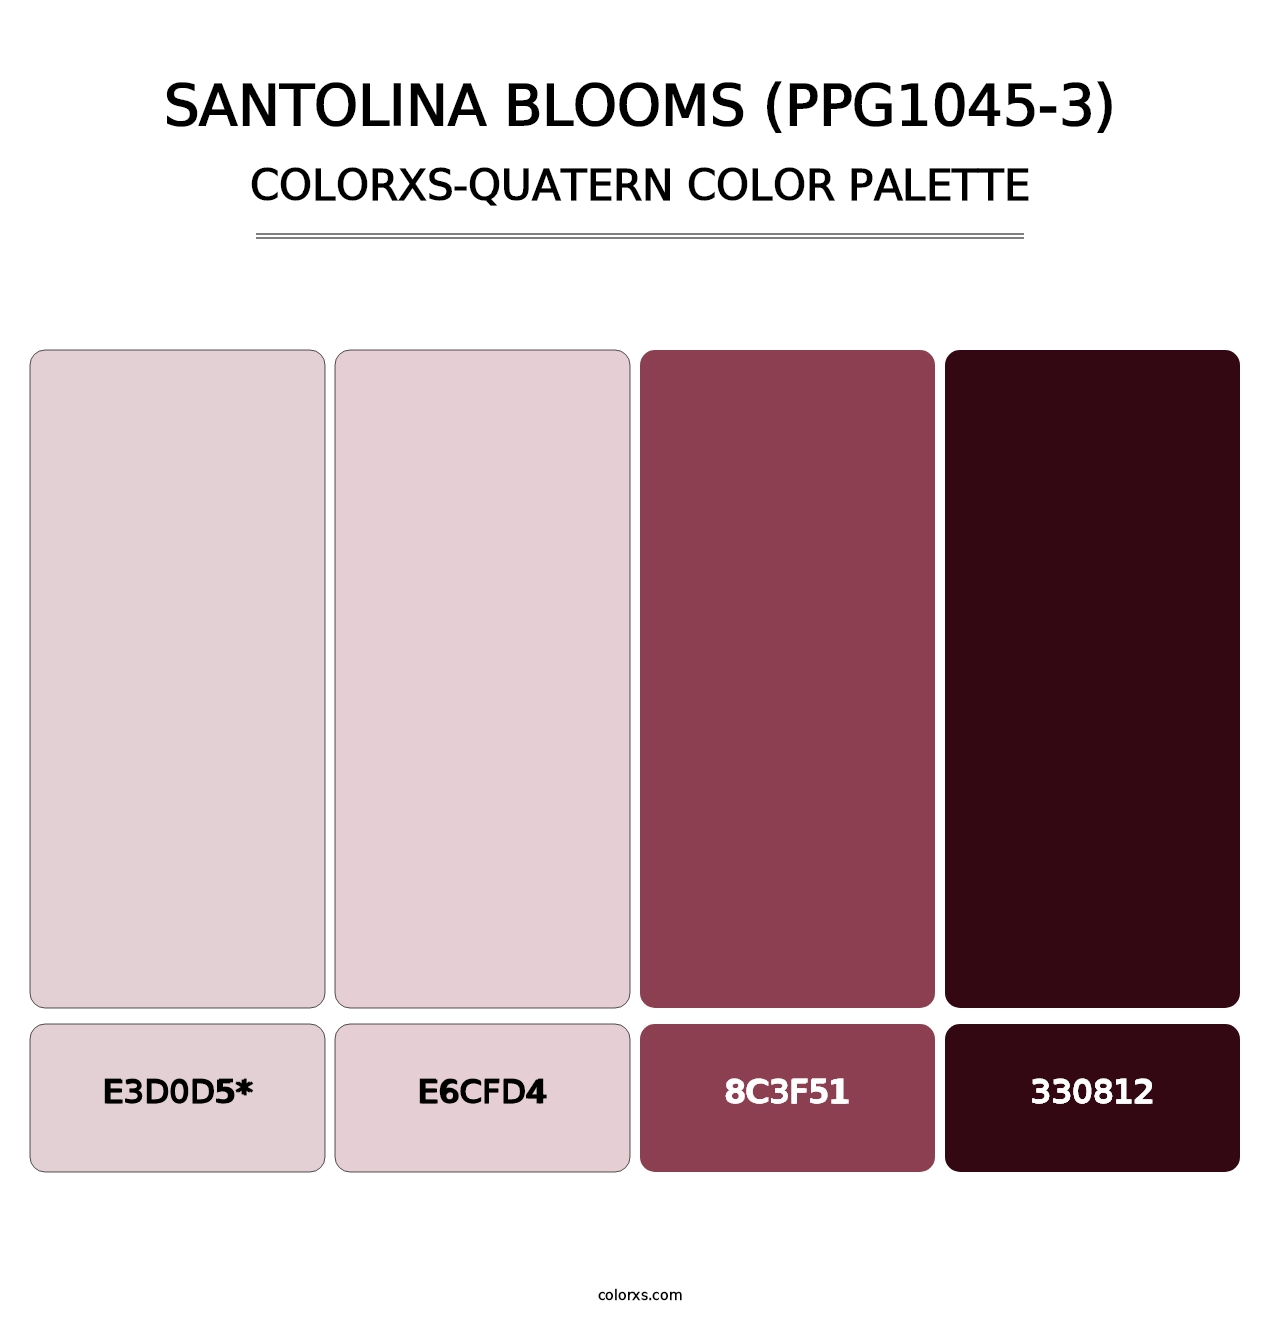 Santolina Blooms (PPG1045-3) - Colorxs Quatern Palette